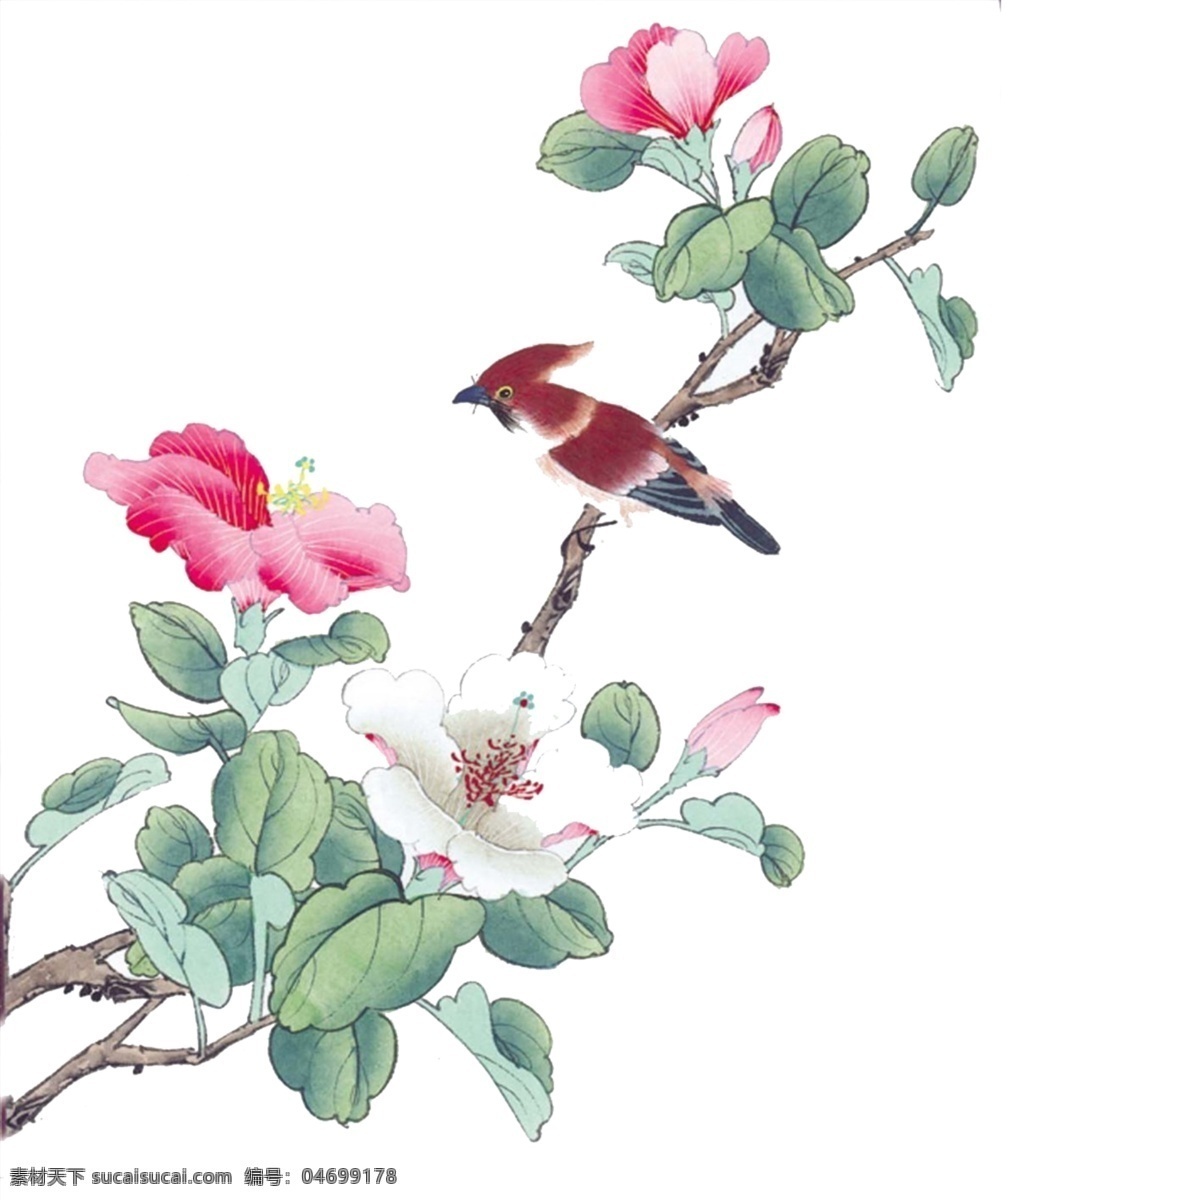 手绘 花鸟 分层 图 手绘花鸟 分层图 国画花鸟 中国风 鸟 文化艺术 绘画书法